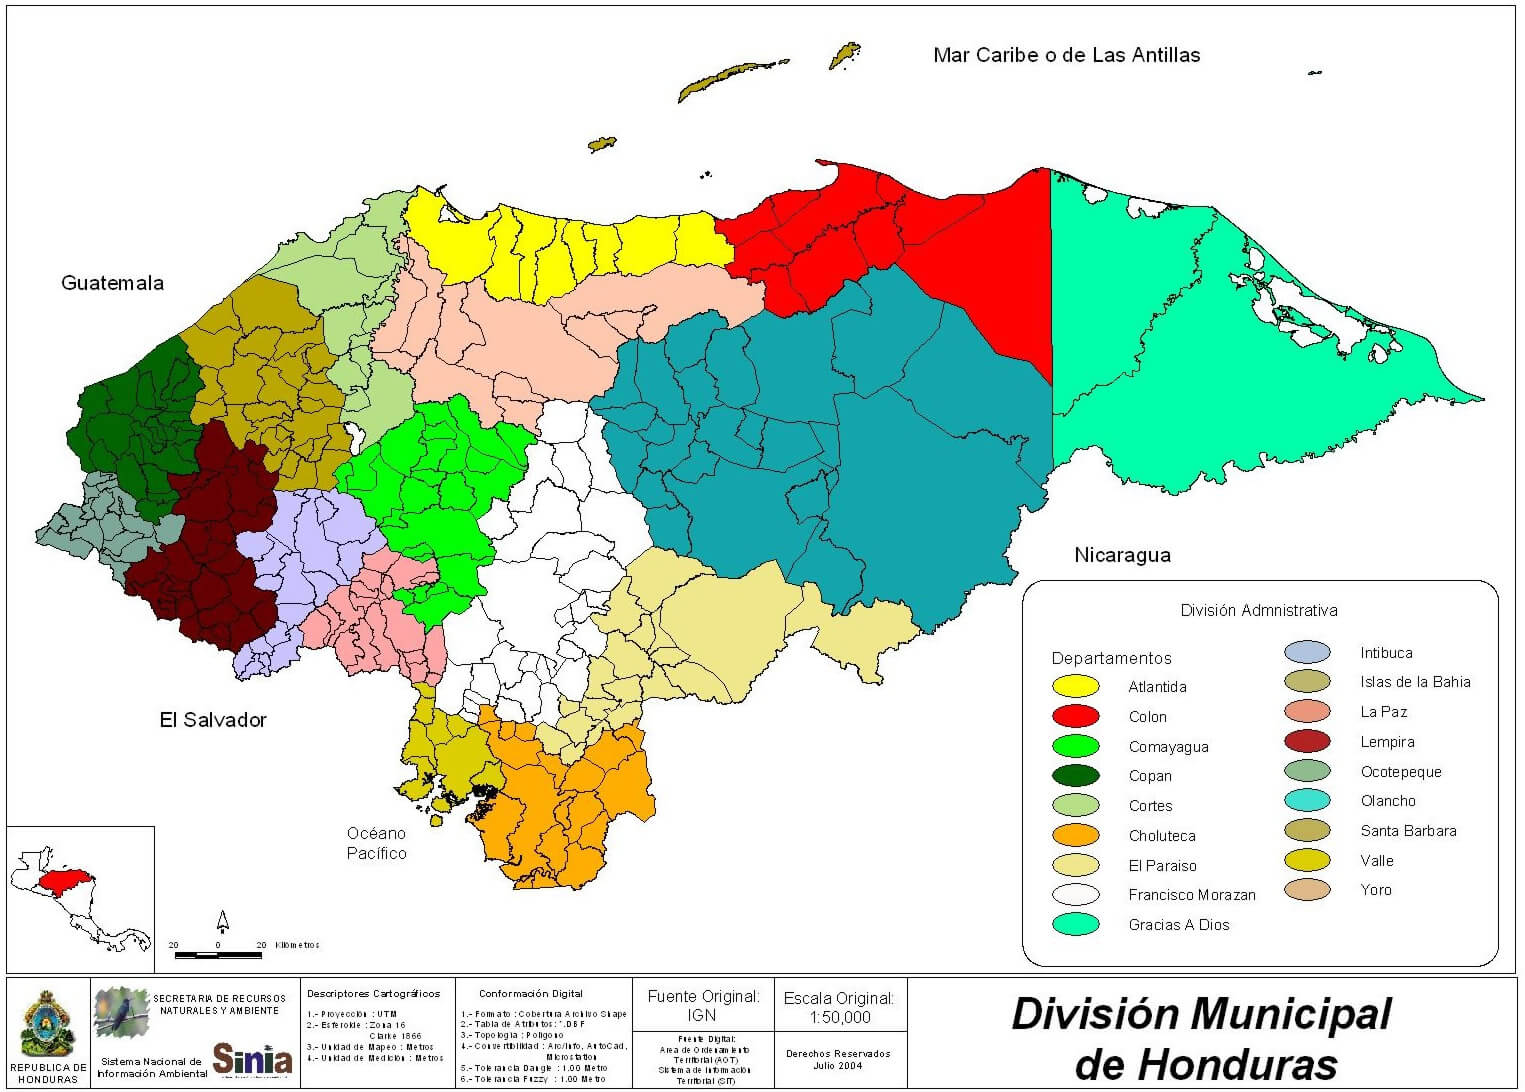 Honduras Municipal Division Map 2004